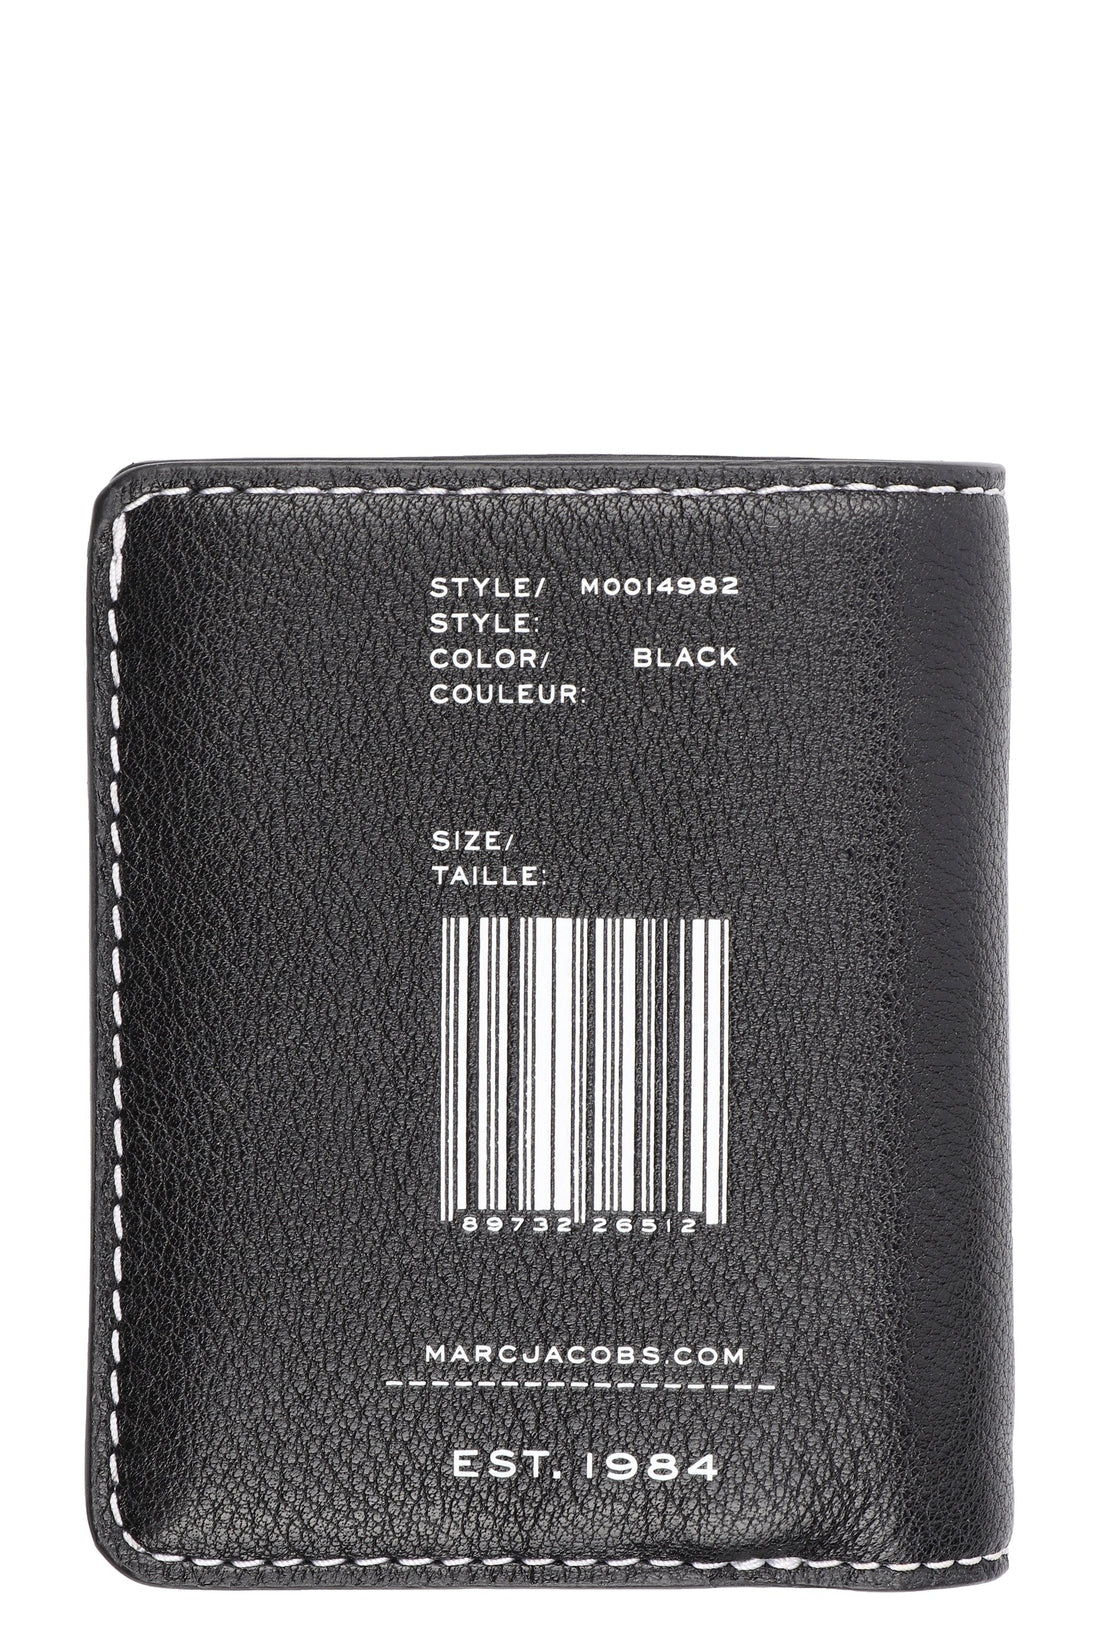 Marc Jacobs-OUTLET-SALE-Logo leather wallet-ARCHIVIST